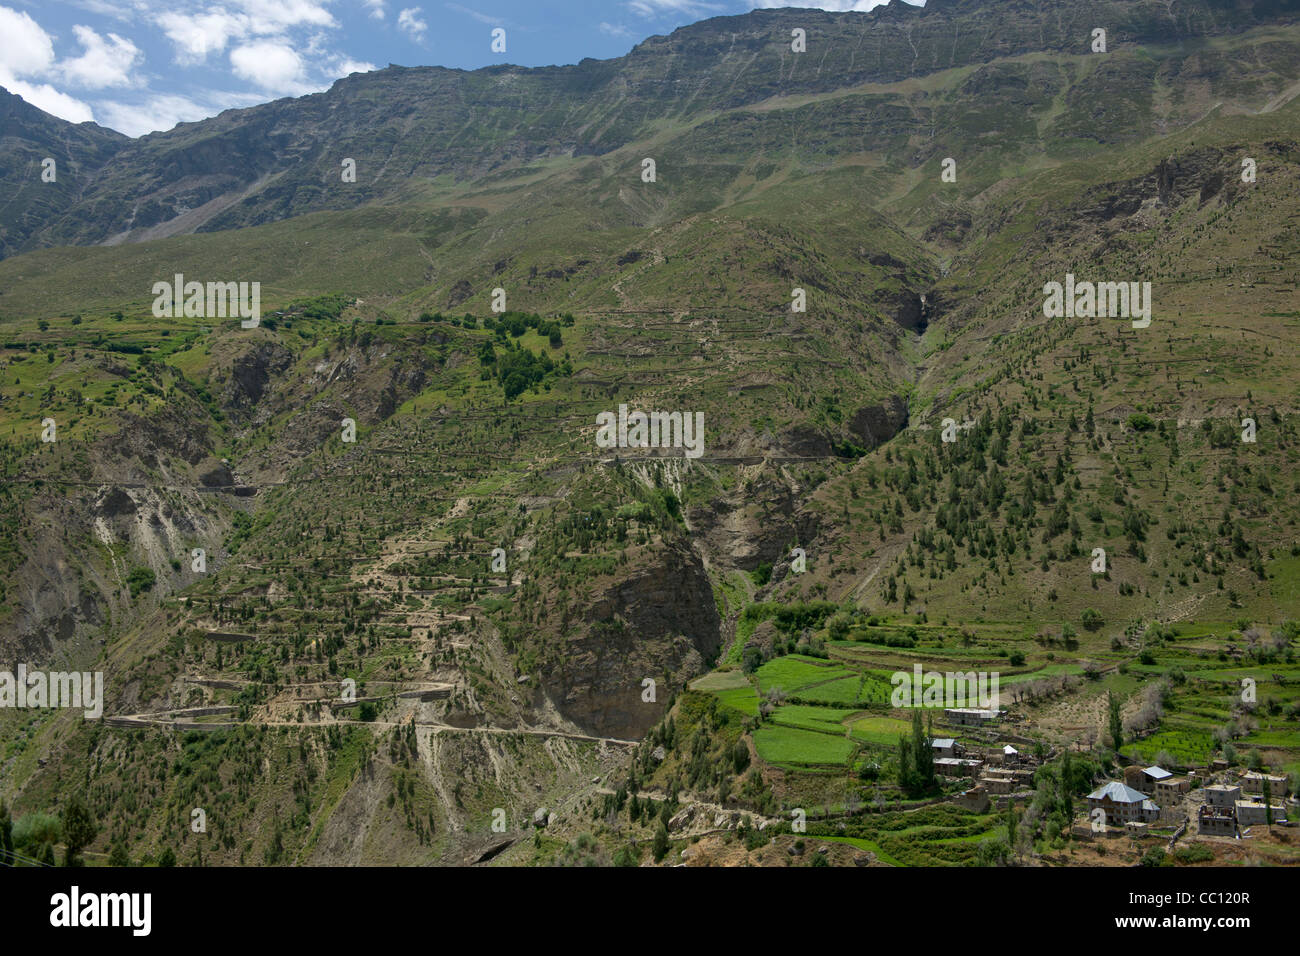 Village de Cheling sur une colline en terrasses escarpées menant à la vallée de la rivière Bhaga, Leh-Manali Highway, Himachal Pradesh, Inde Banque D'Images